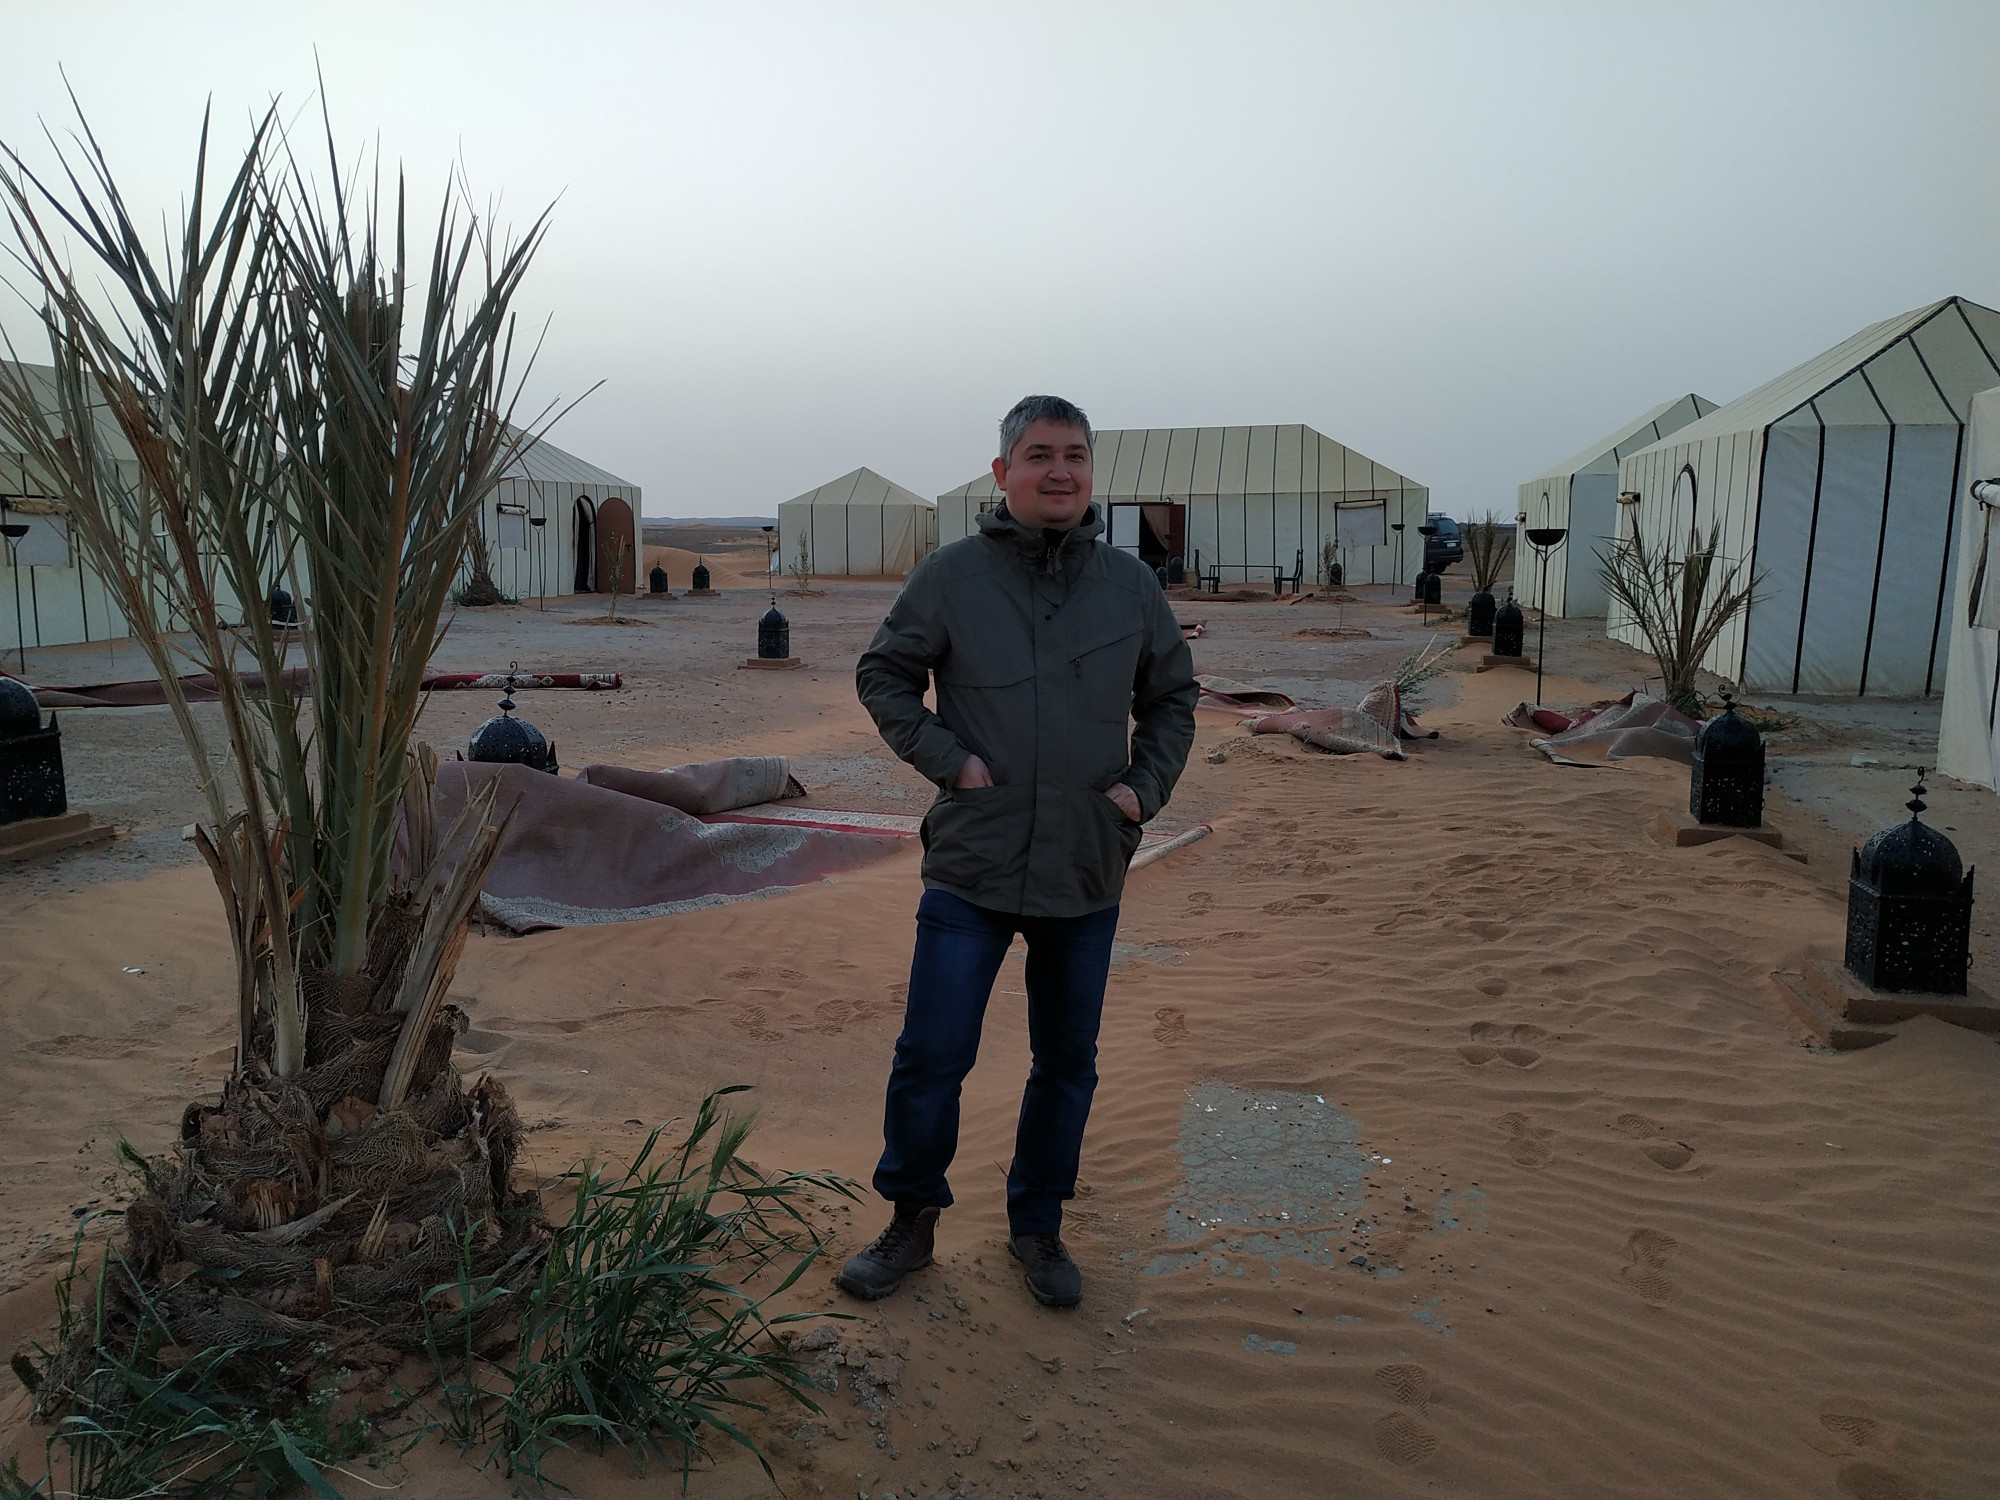 Я в гостинице — лагере в Сахаре. (20.03.2020)